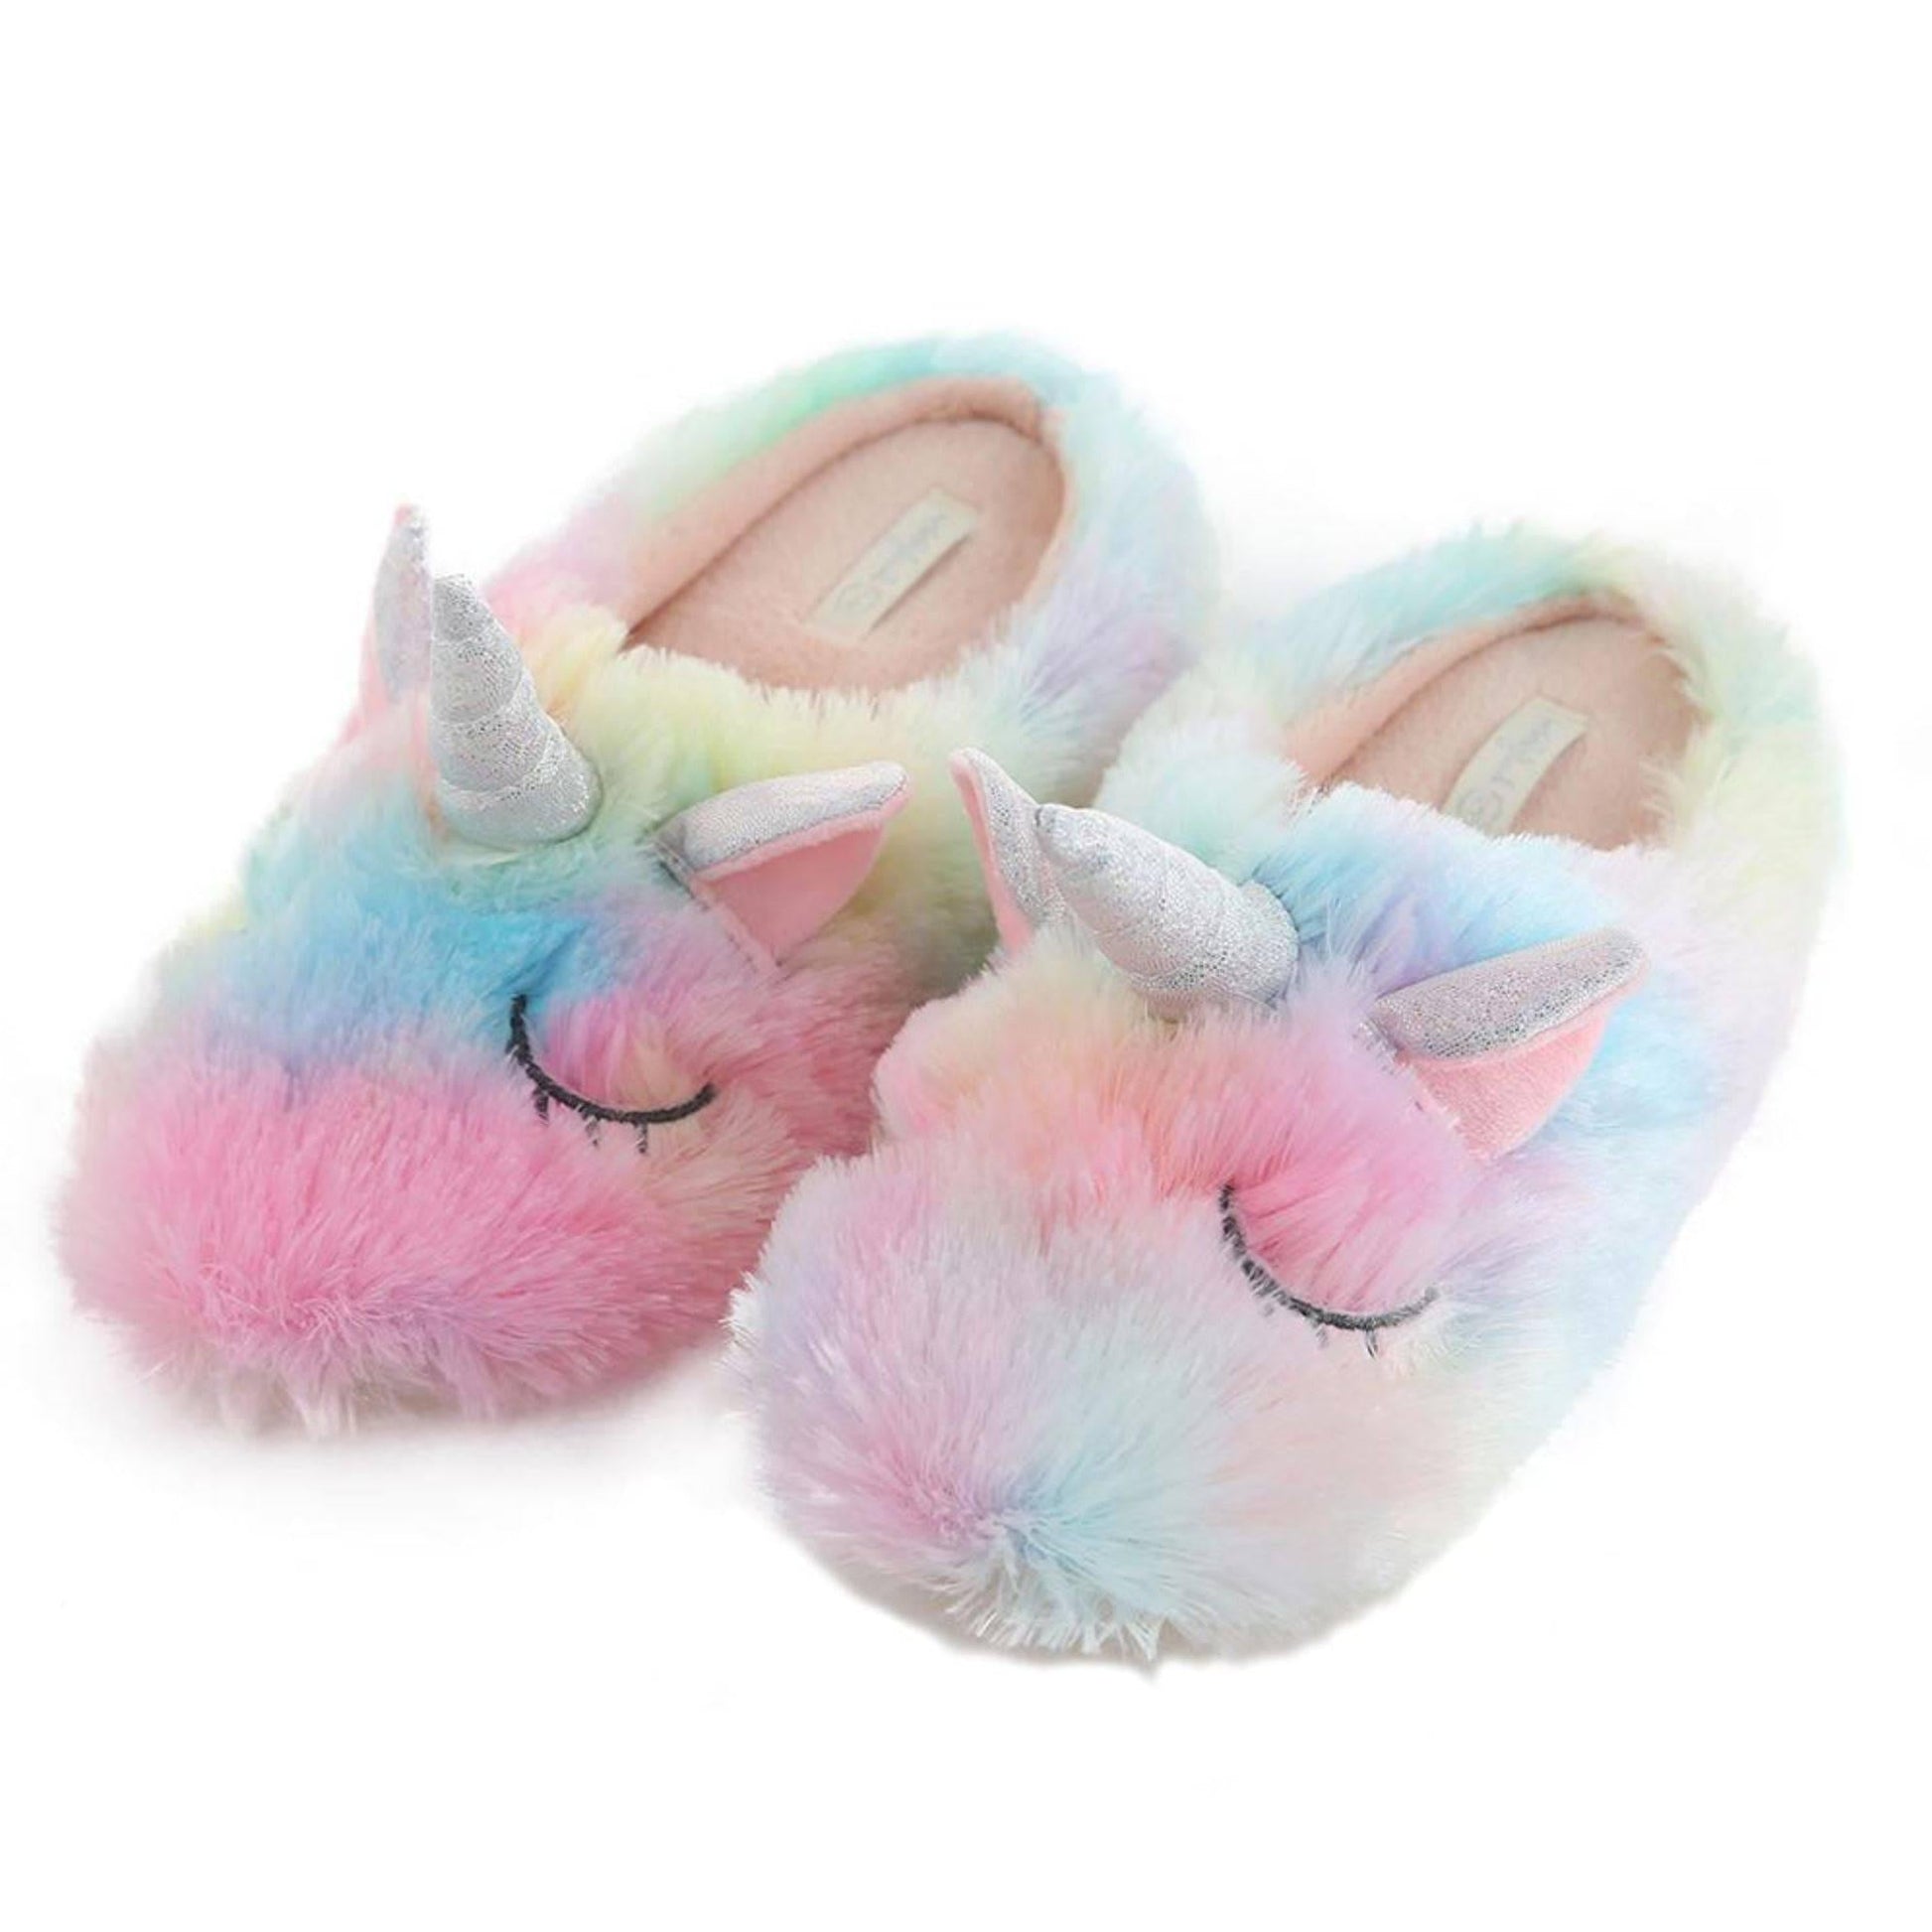 Multicolored Unicorn Slippers - Unicorn